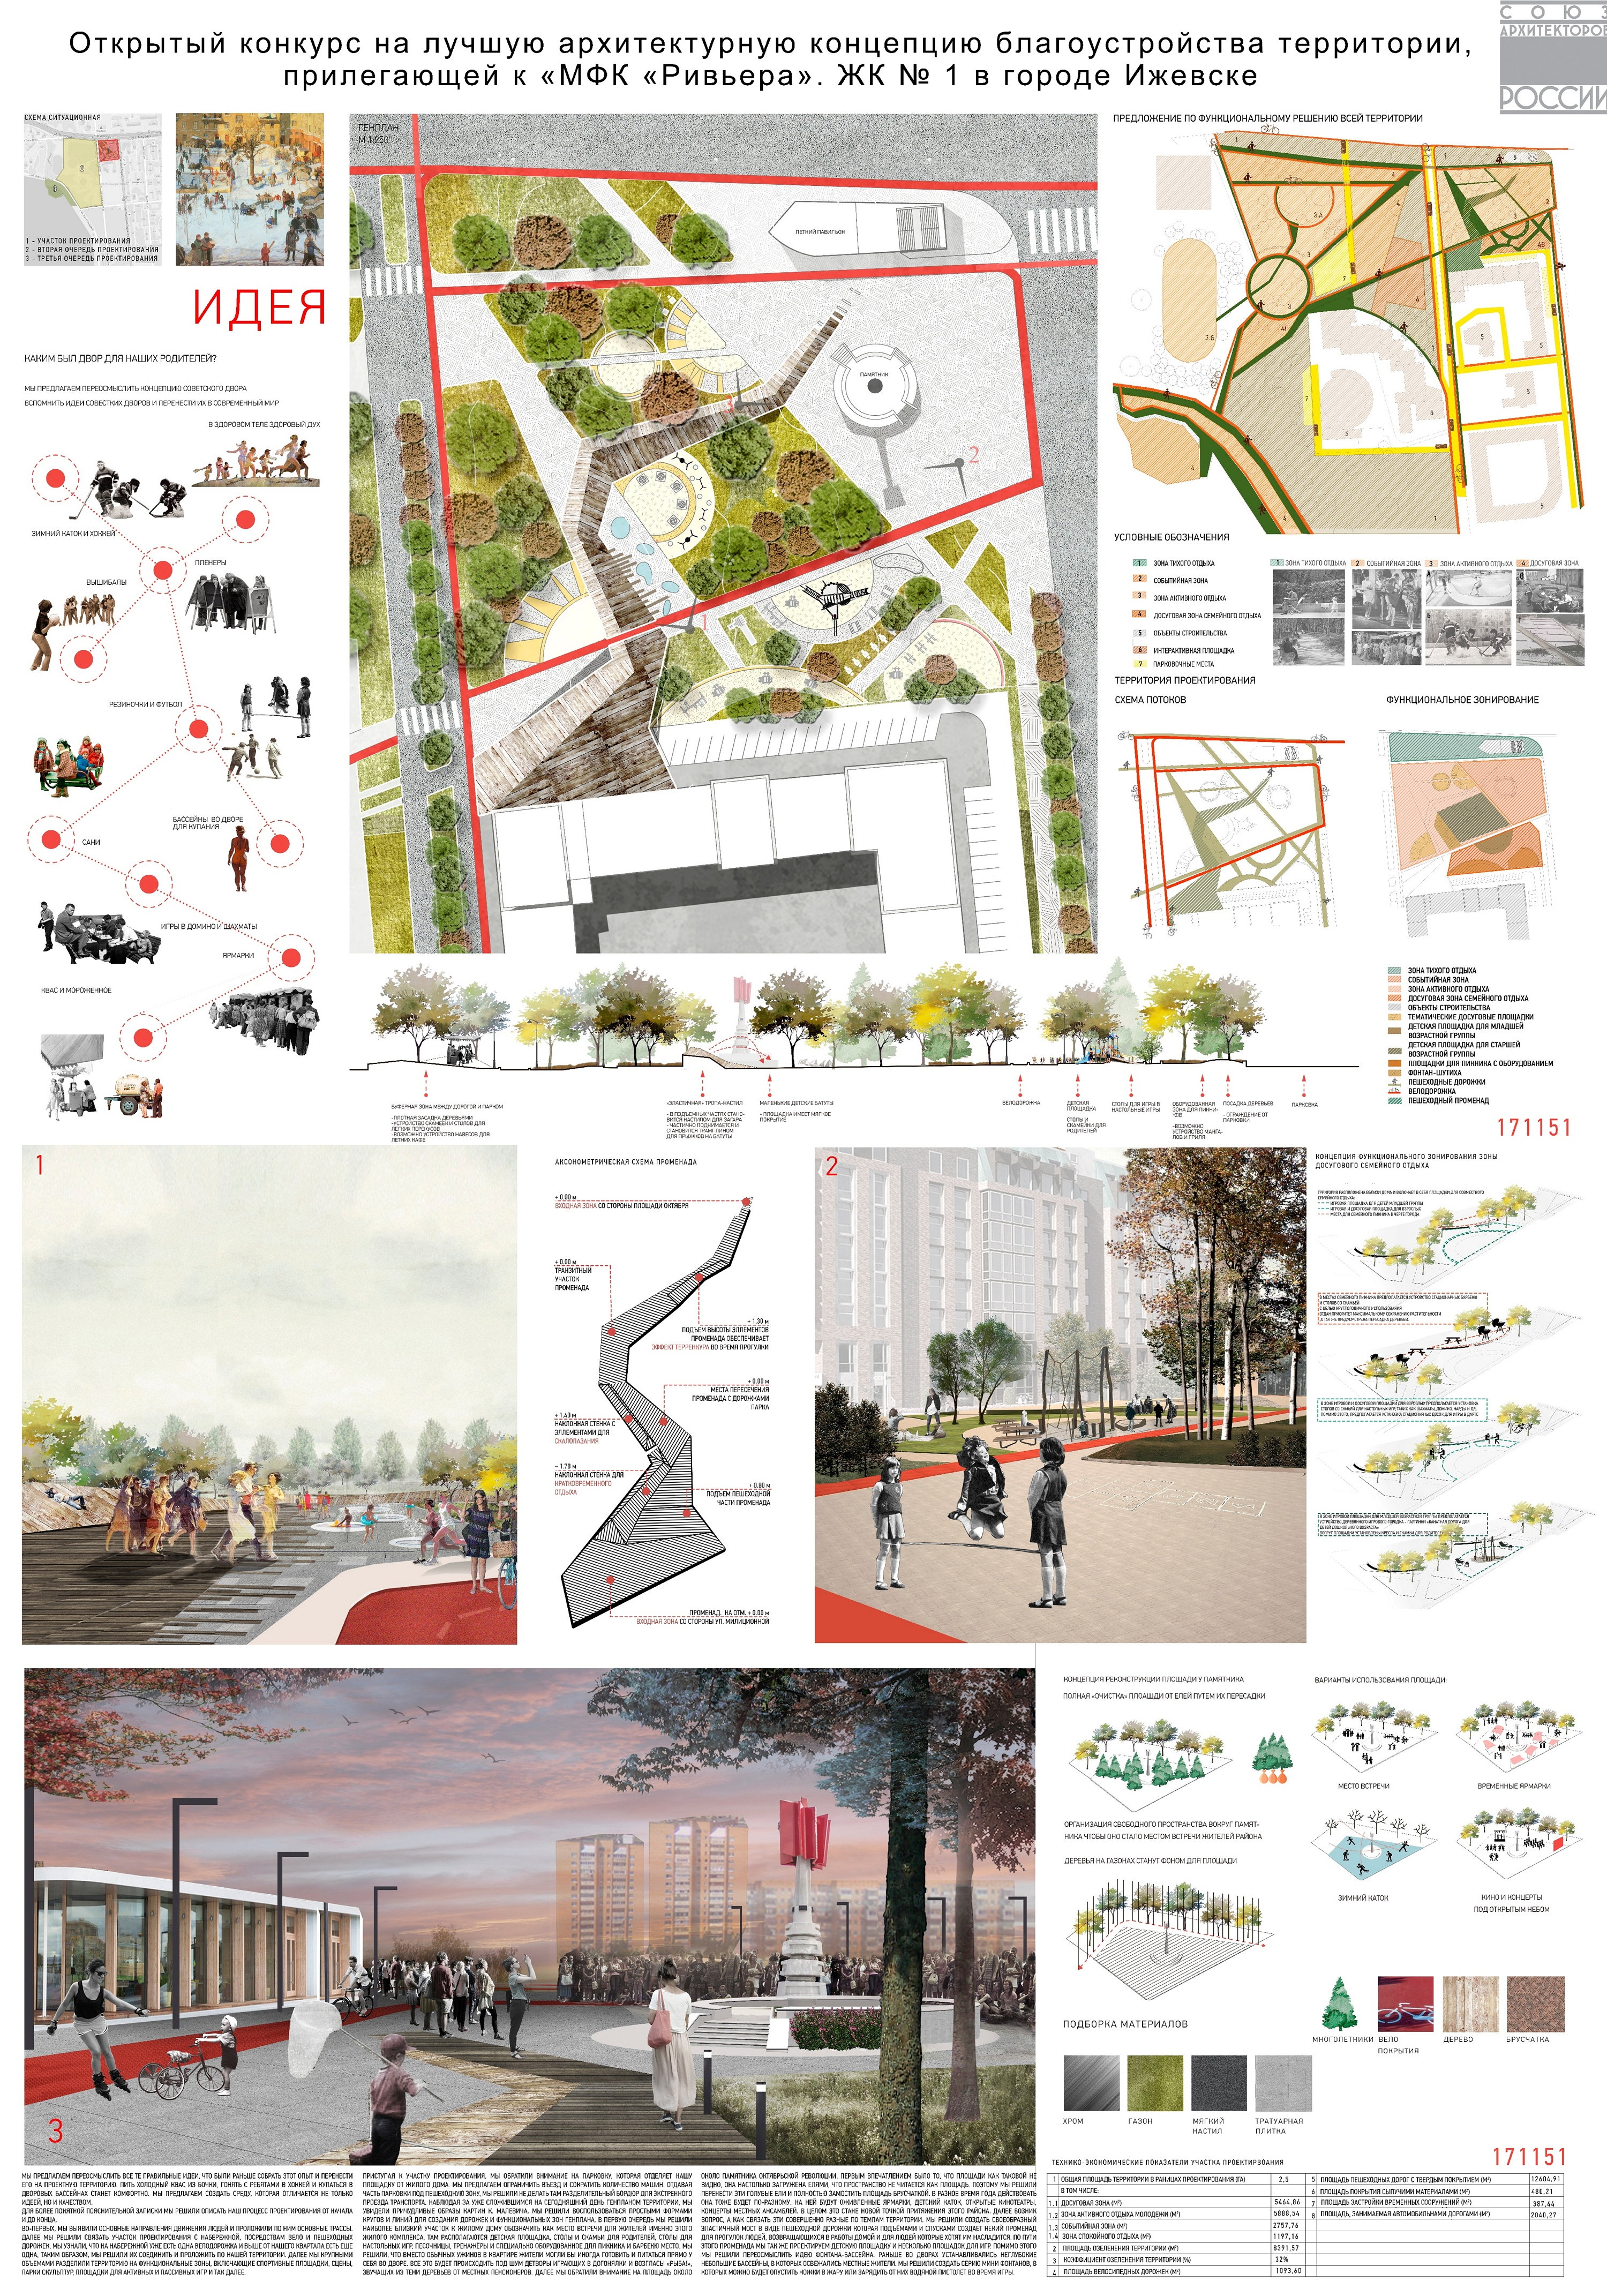 Курсовая работа по теме Эскизное предложение благоустройства открытого пространства в городской среде